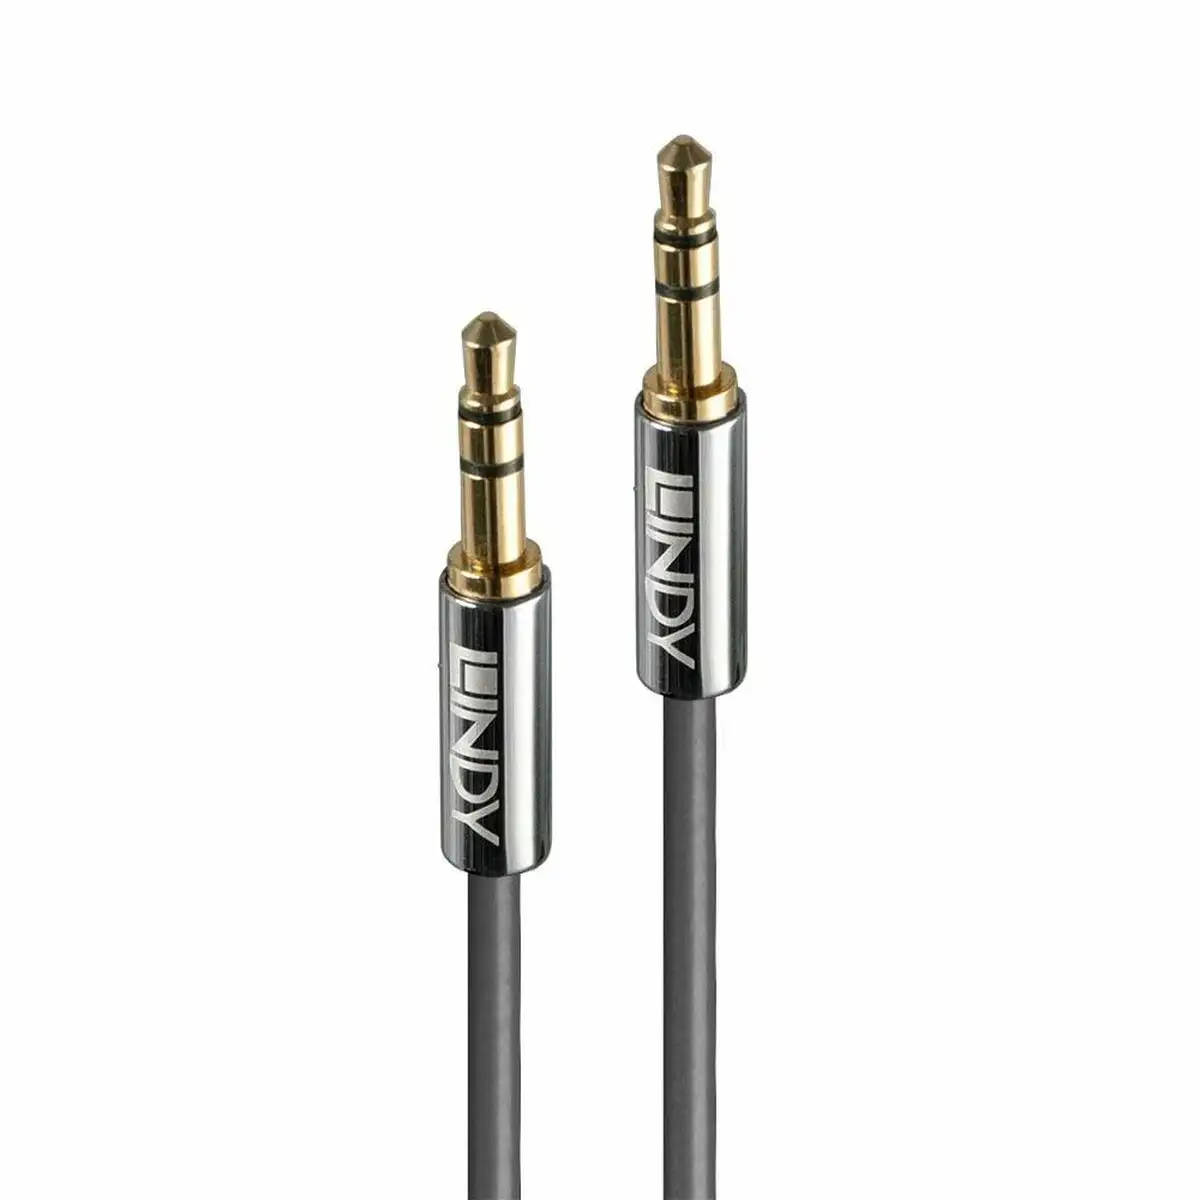 Cable audio jack 3 5 mm lindy 35324_8217. DIAYTAR SENEGAL - Où la Qualité est Notre Engagement. Explorez notre boutique en ligne pour découvrir des produits conçus pour vous apporter satisfaction et plaisir.